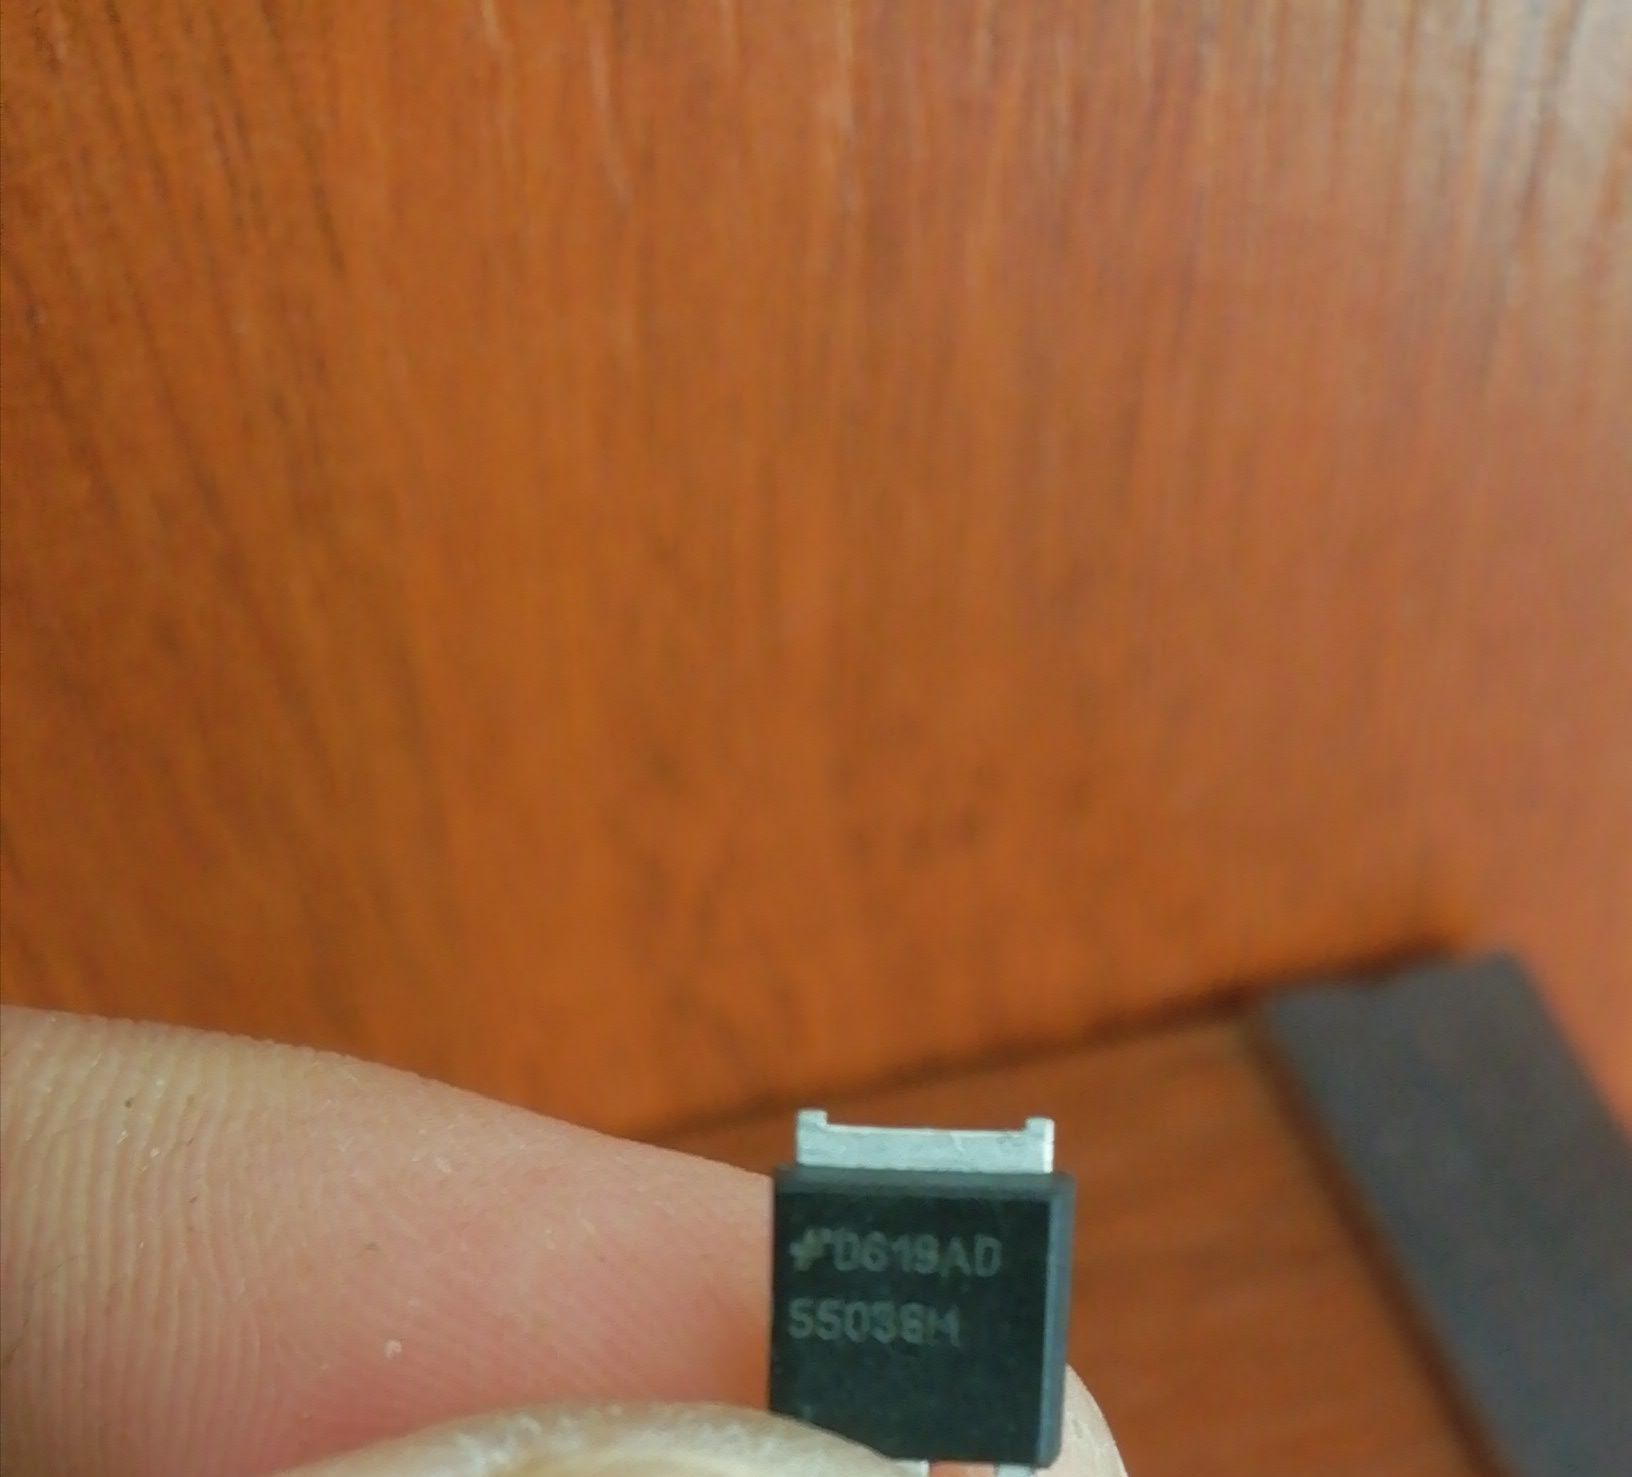 Катушка зажигания транзистор 5503GM